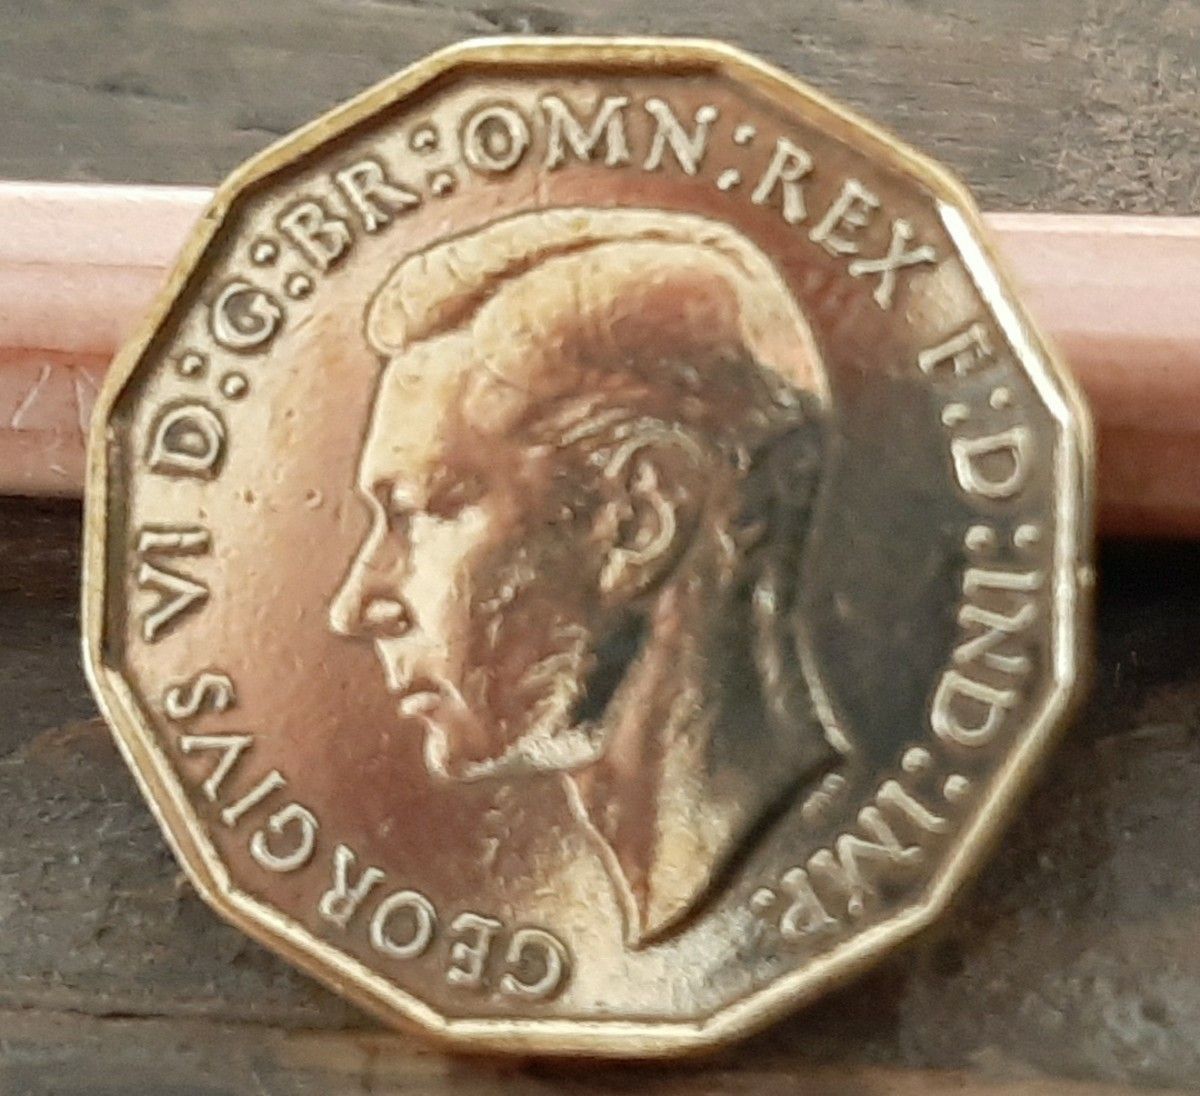 1937年~1952年 英国 3ペニーコイン 50個セットイギリス 3ペンスブラス美物ジョージ王21mm x 2.5mm 6.8g